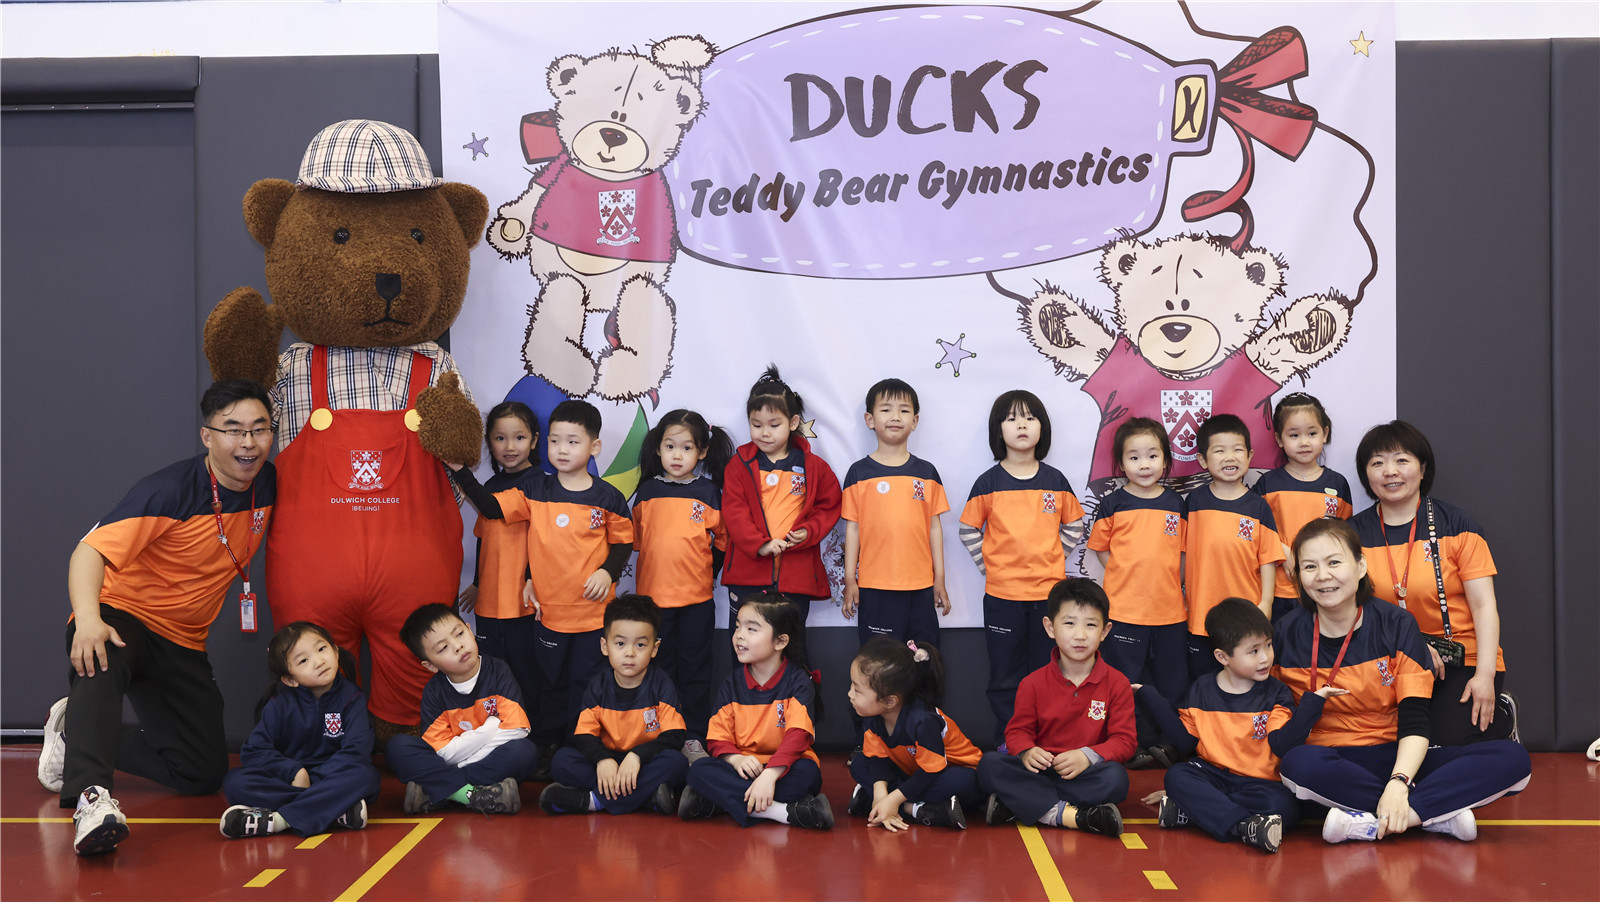 Teddy bear gym - house team photo